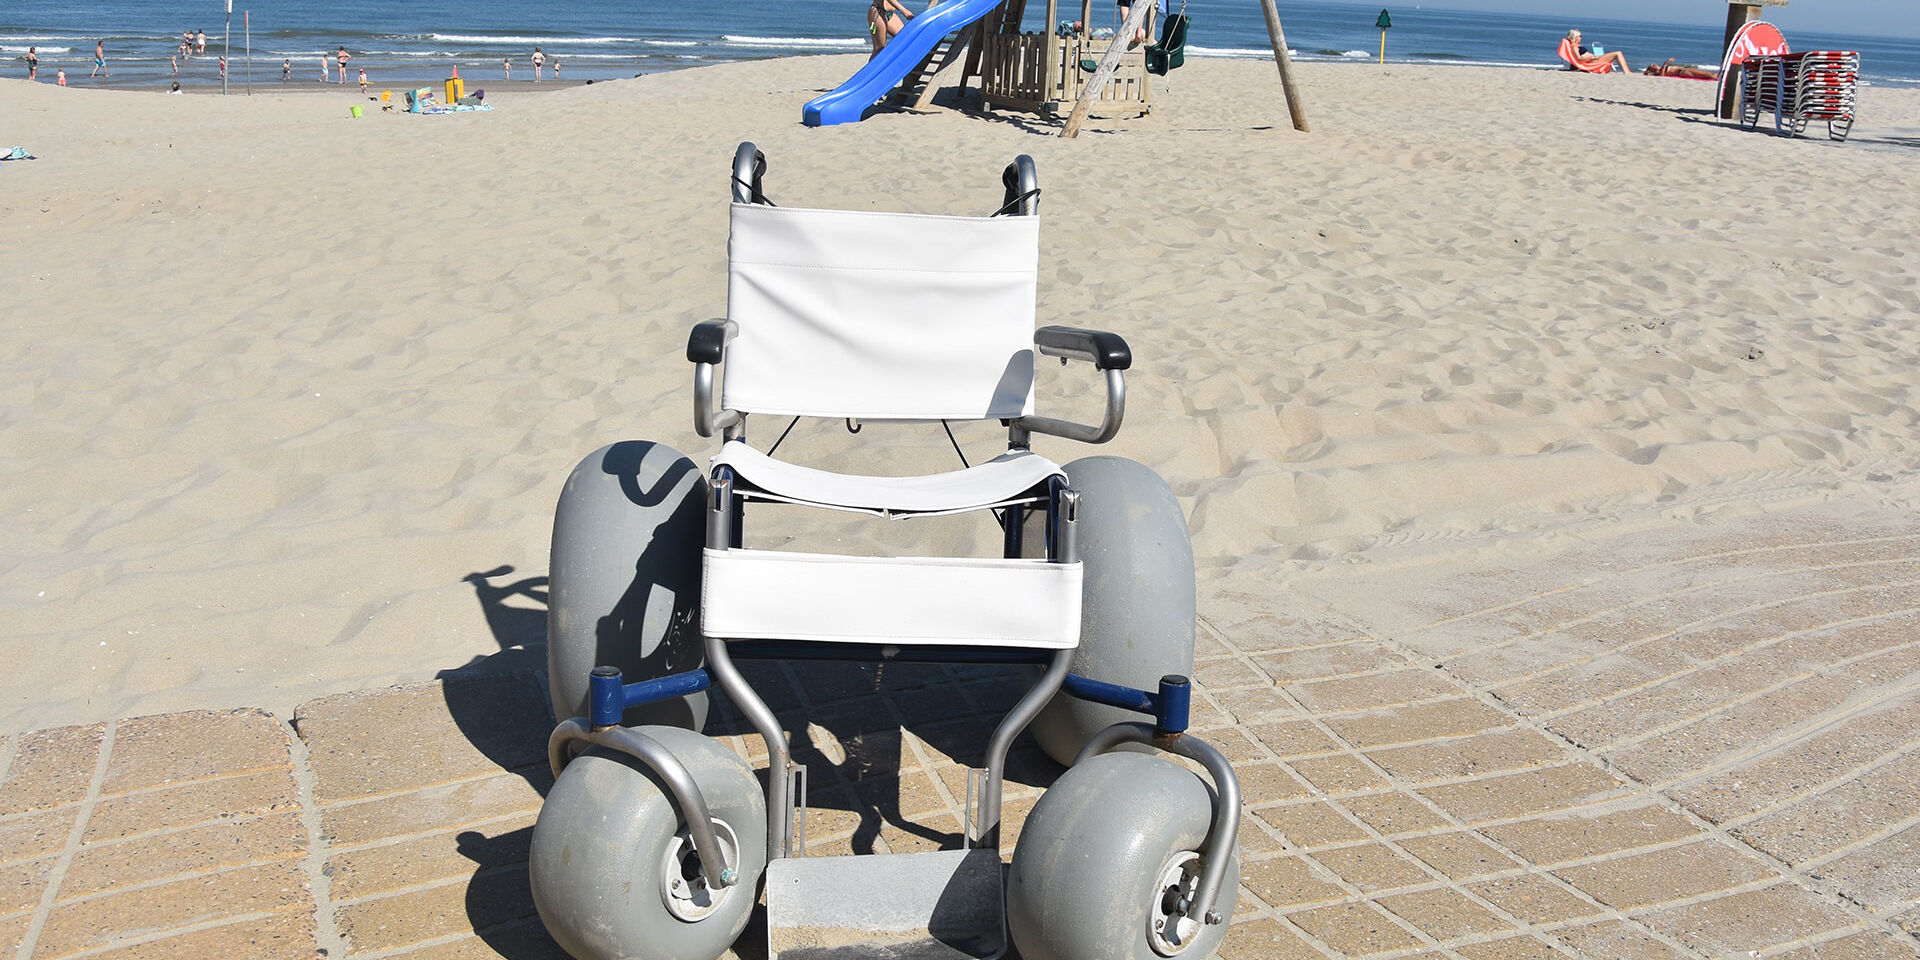 strandrolstoel voor gehandicapten met brede banden staat op het strand in het westland klaar om gebruikt te worden door mindervaliden voor een rit op het strand van het Westland